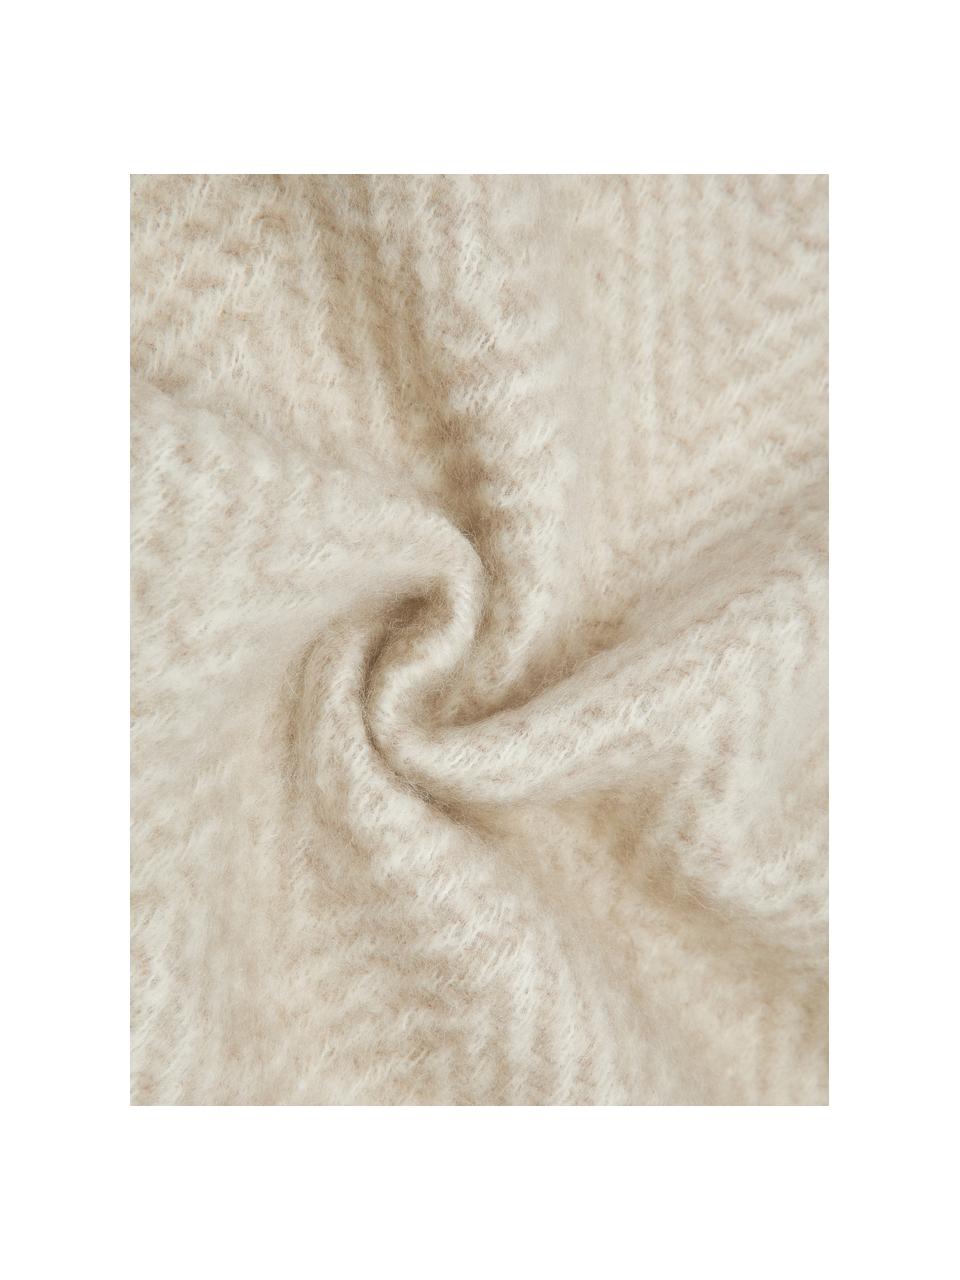 Plaid en laine beige avec franges Mathea, 60 % laine, 25 % acrylique, 15 % nylon, Beige, crème, long. 170 x larg. 130 cm